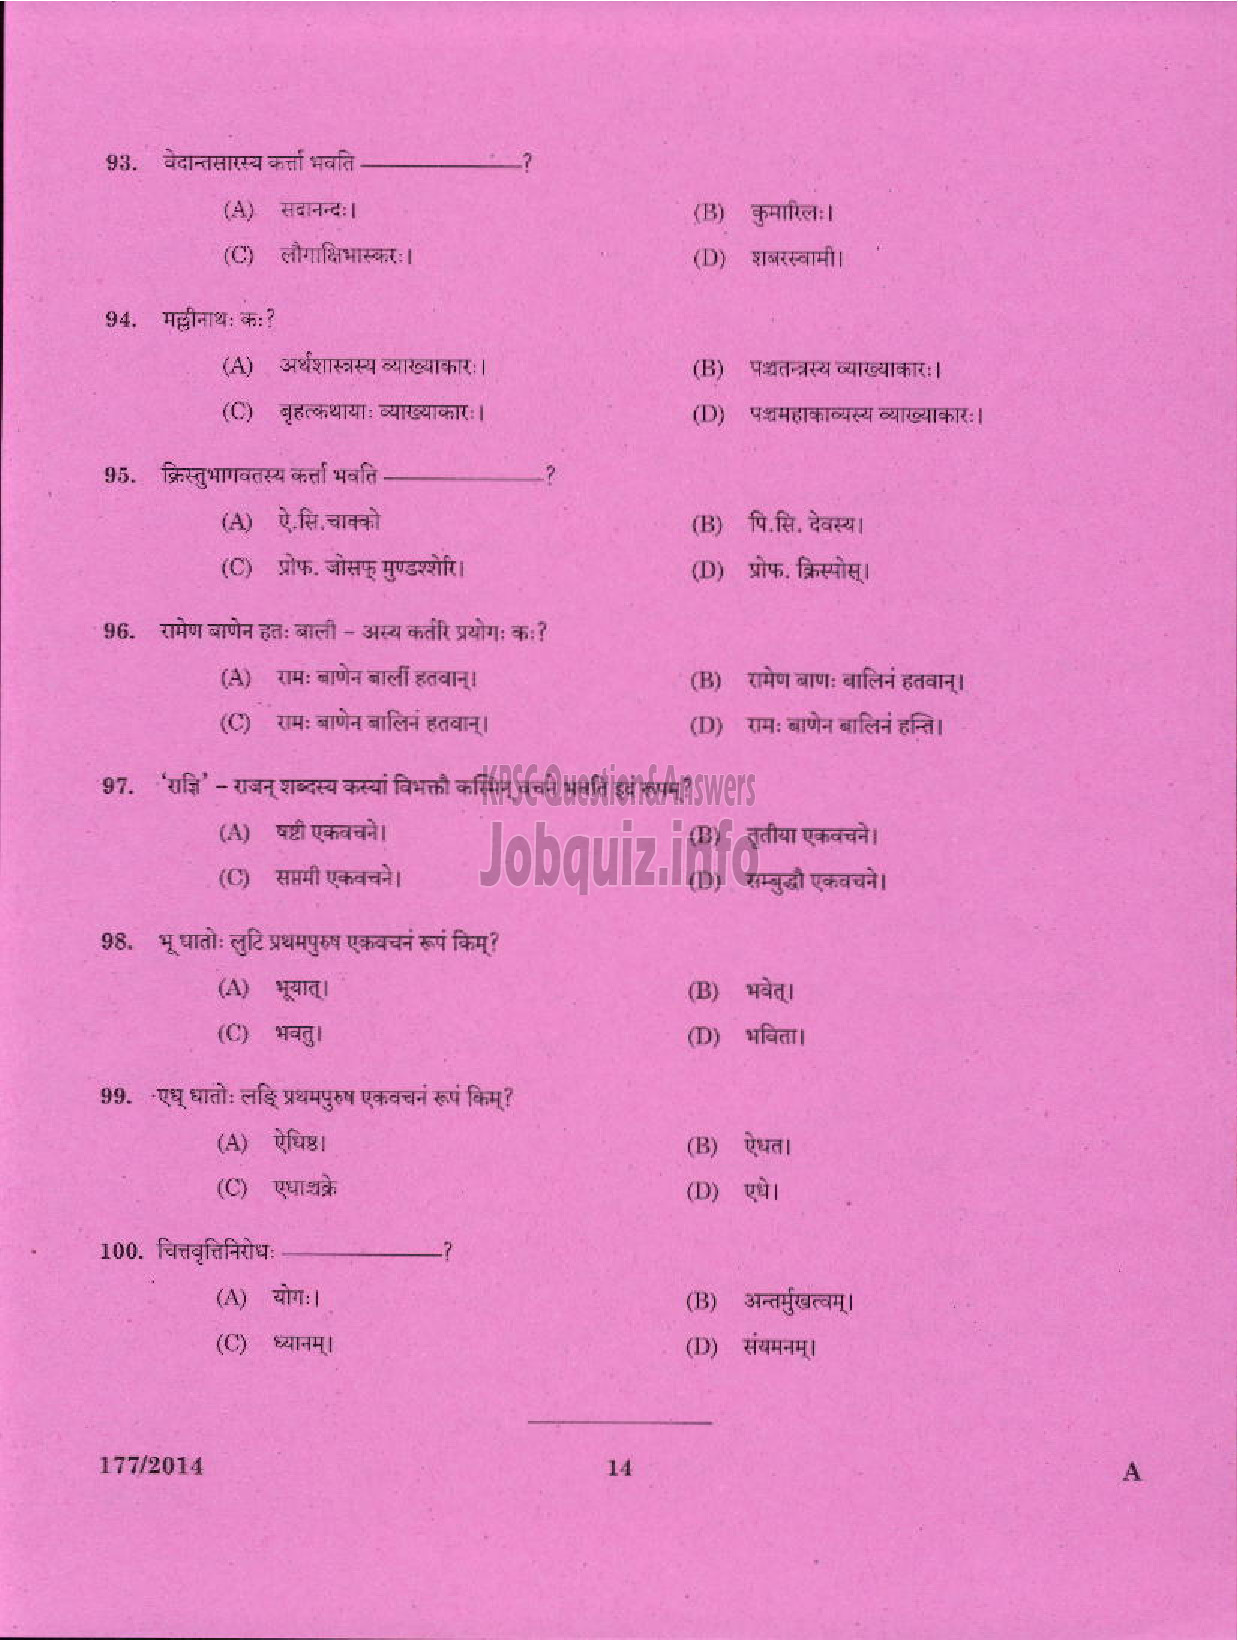 Kerala PSC Question Paper - PART TIME JUNIOR LANGUAGE TEACHER SANSKRIT EDUCATION-12